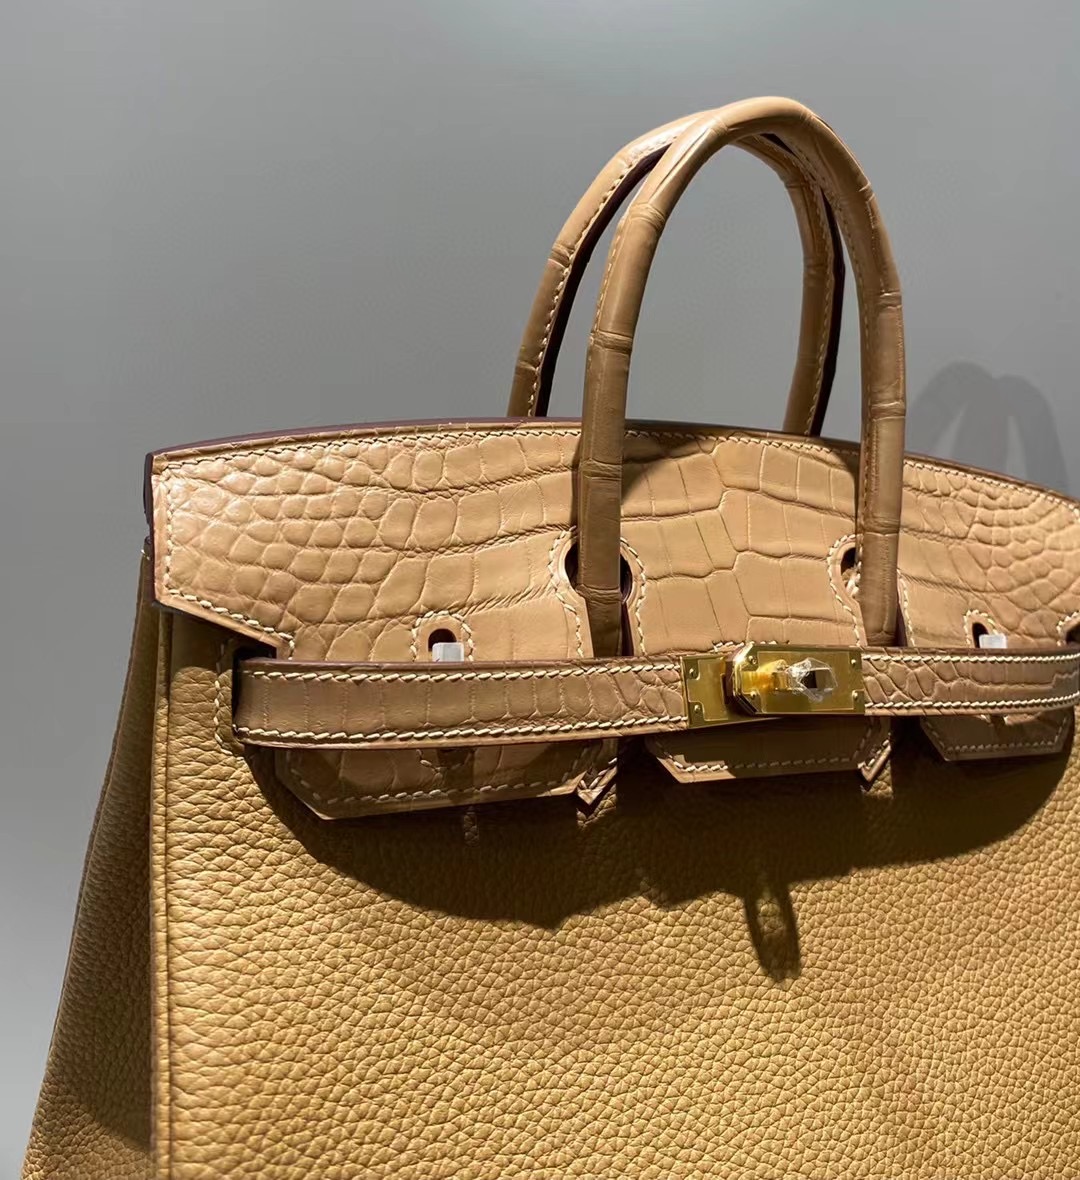 Hermes Birkin Bag Original Leather crocodile togo HBK2530 Apricot